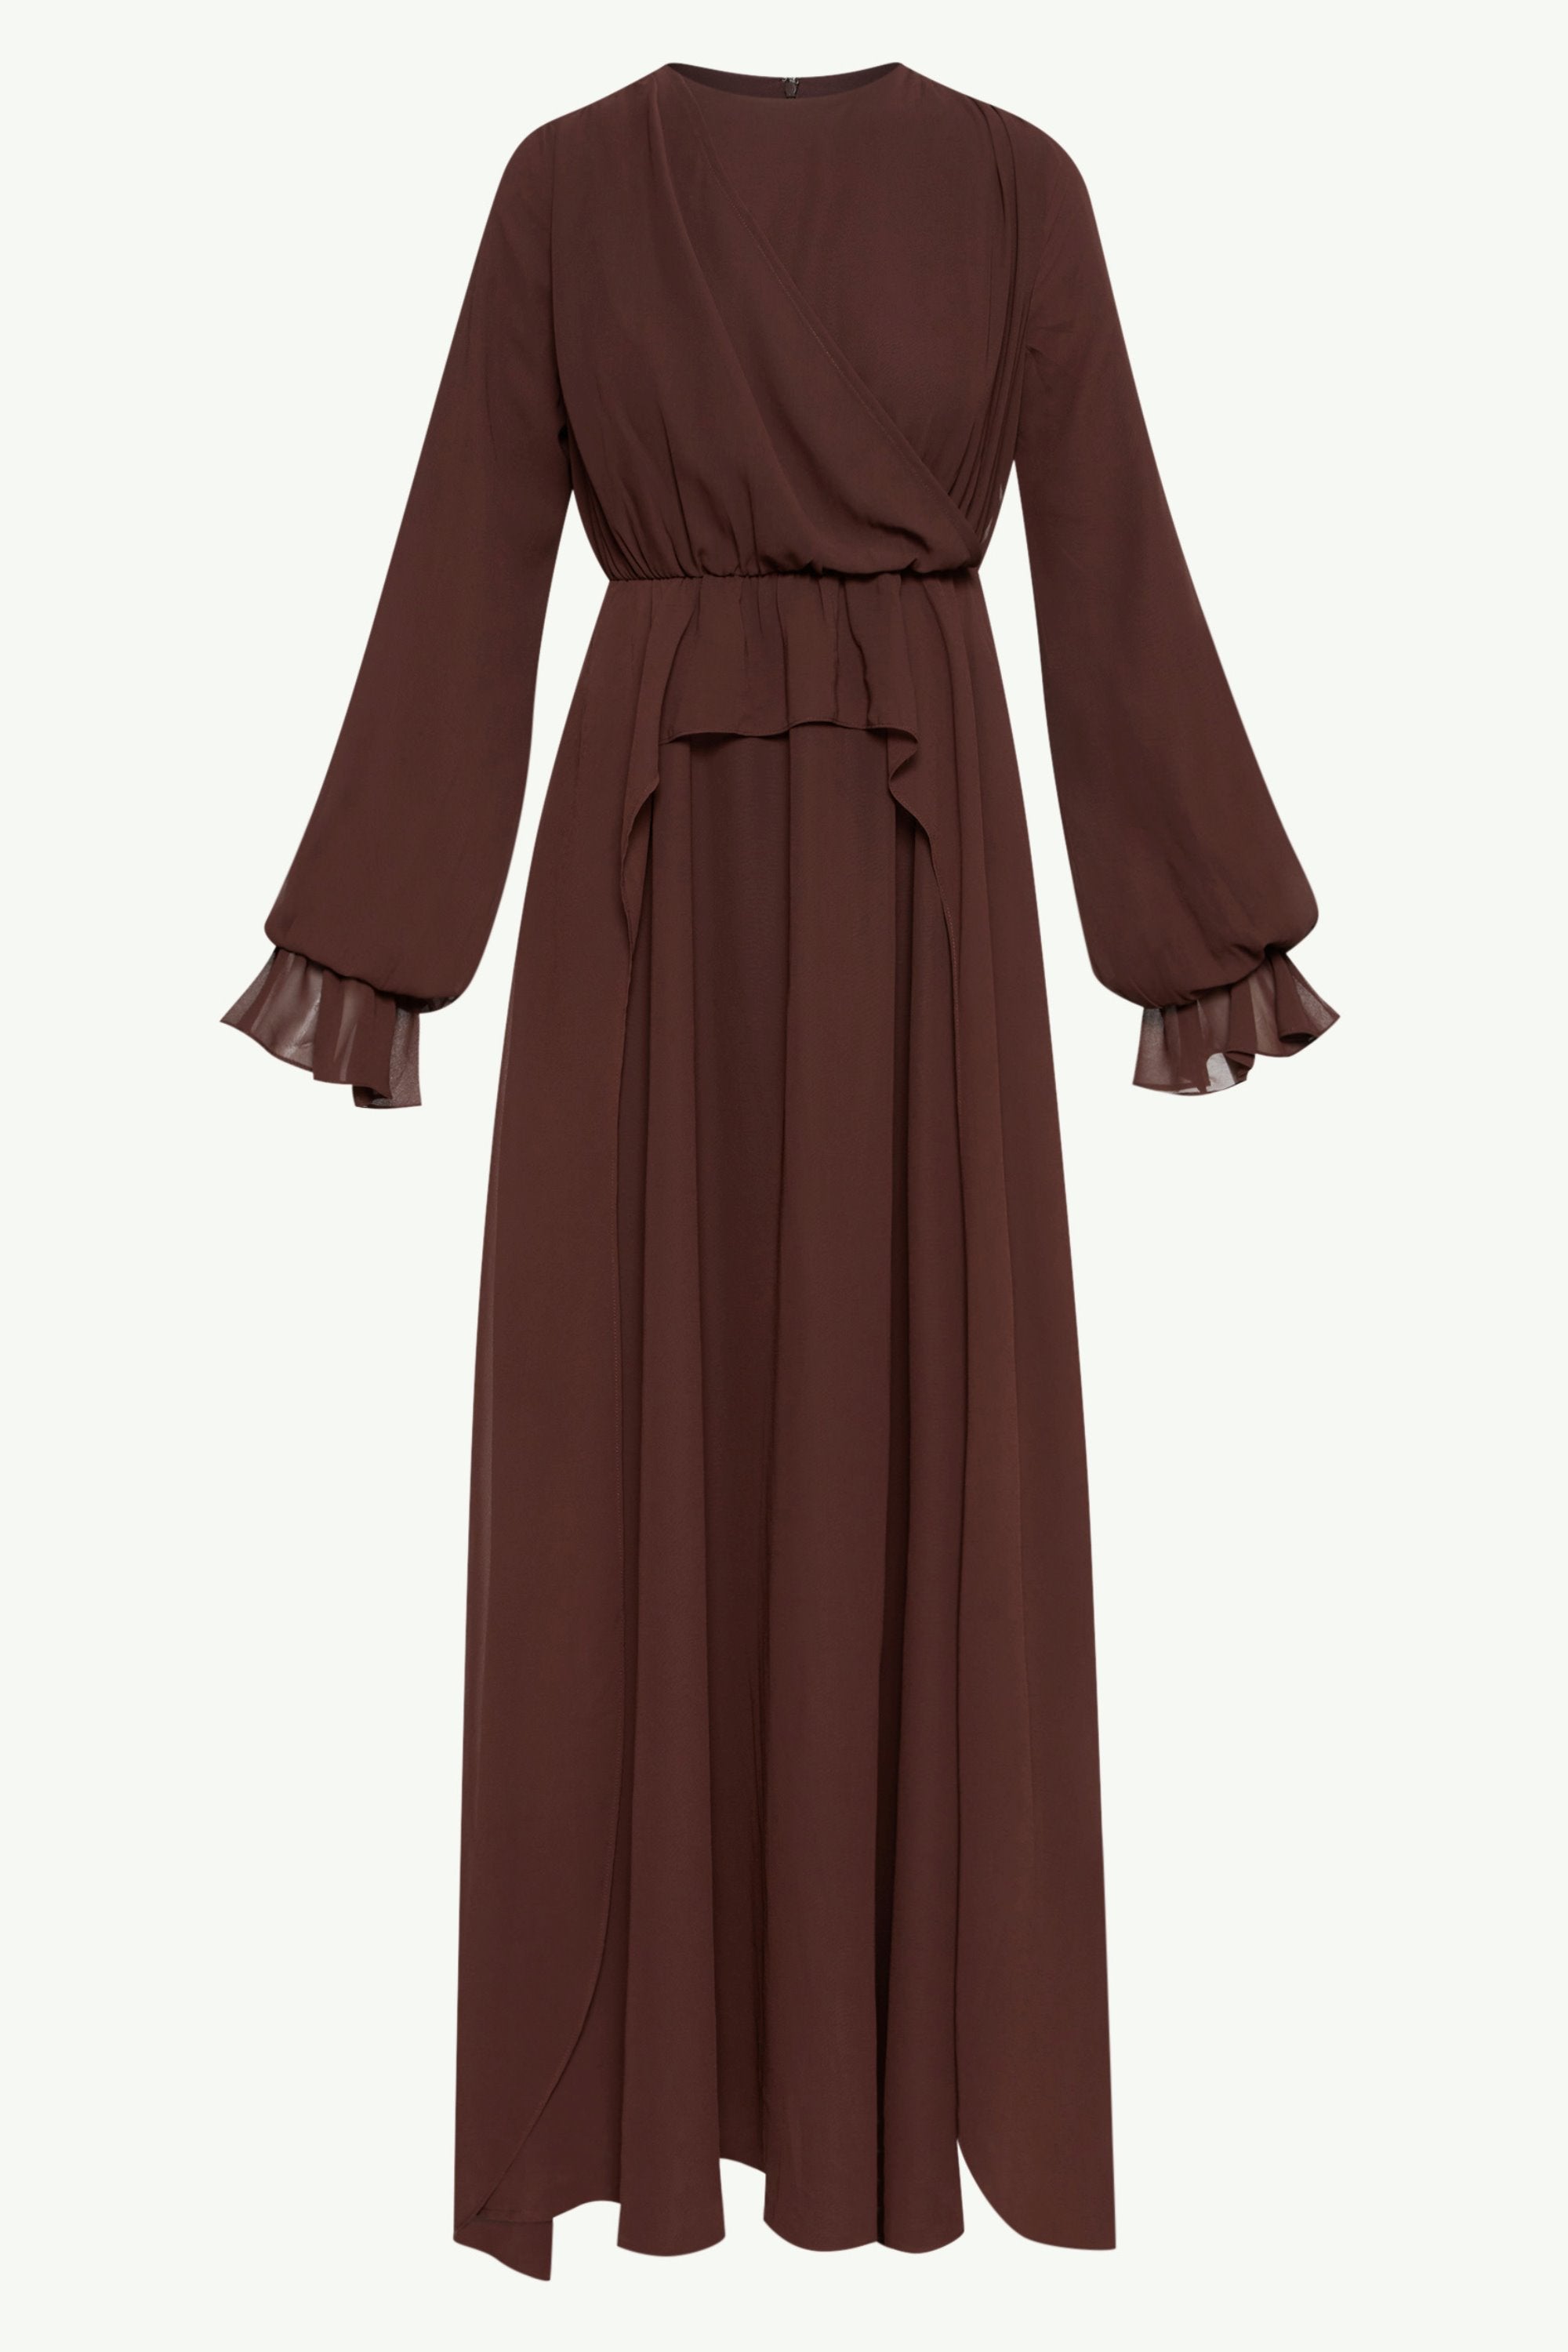 Aara Chiffon Maxi Dress - Chocolate Clothing epschoolboard 